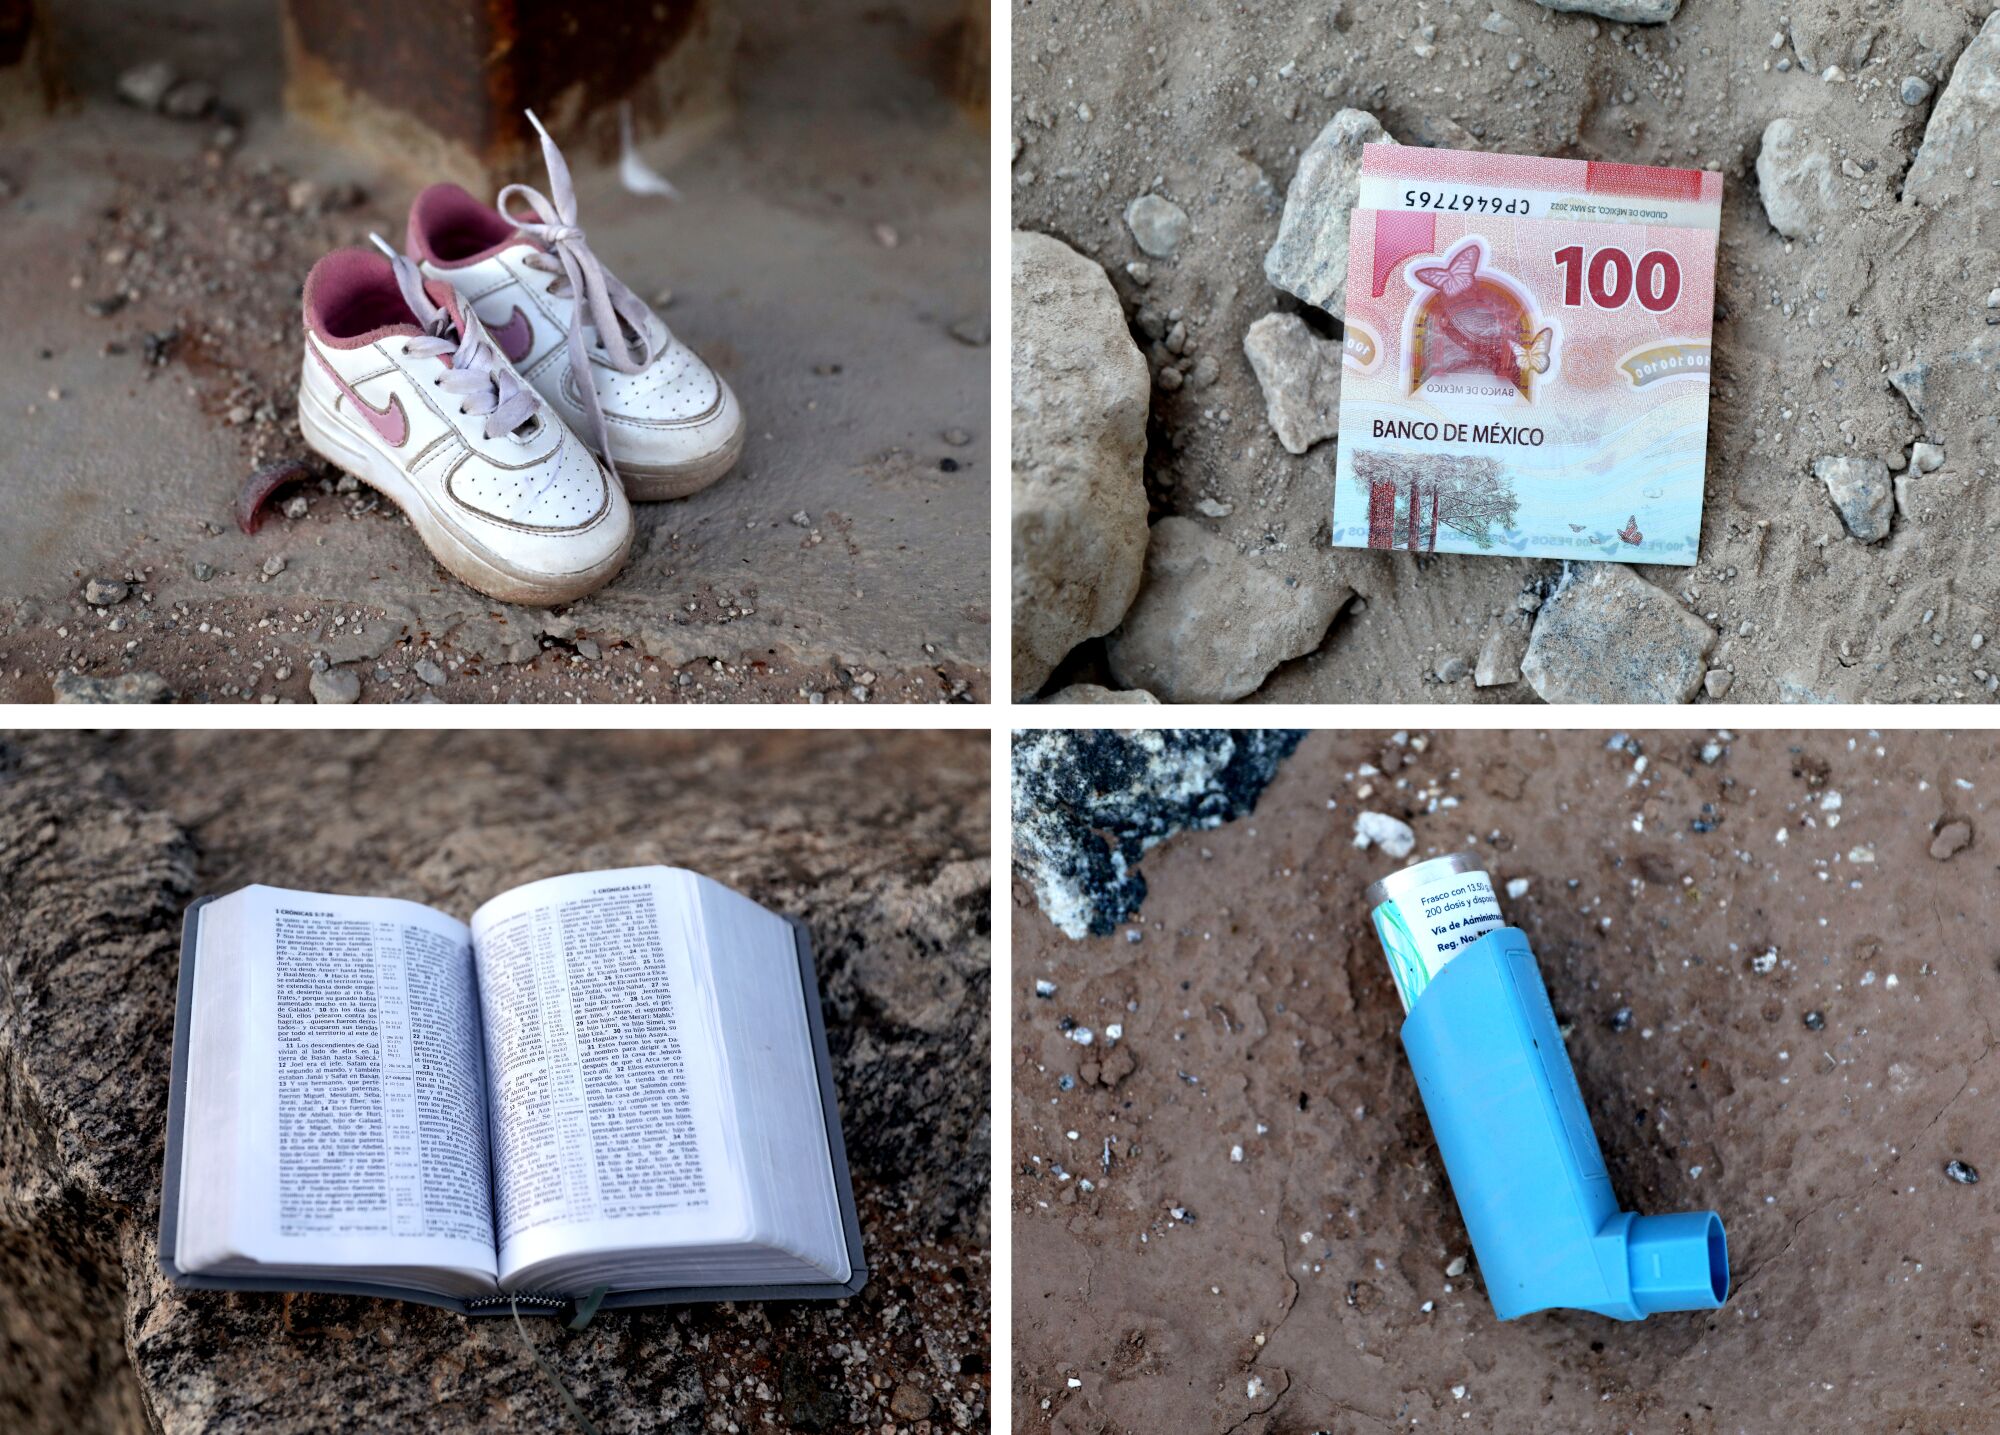 Combinaison de 4 images, dans le sens des aiguilles d'une montre à partir du haut à gauche : chaussures de bébé, pesos mexicains, inhalateur et Bible